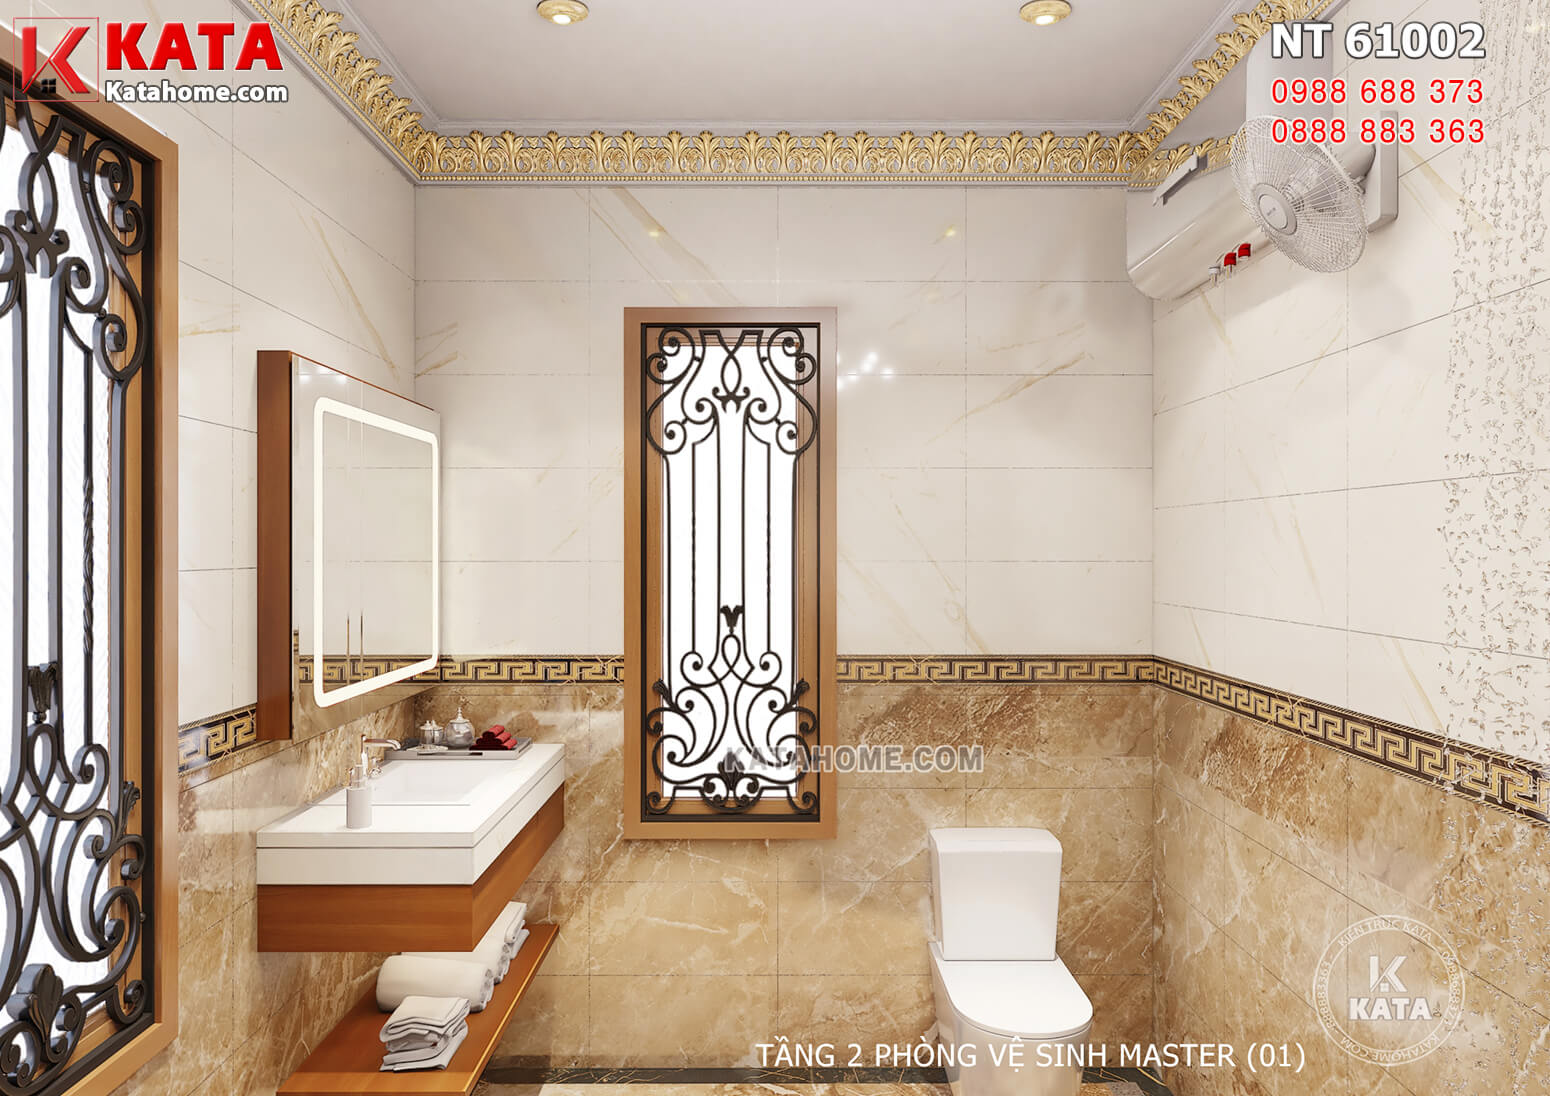 Hình ảnh: Thiết kế nội thất tân cổ điển đẹp cho phòng vệ sinh phòng ngủ Master